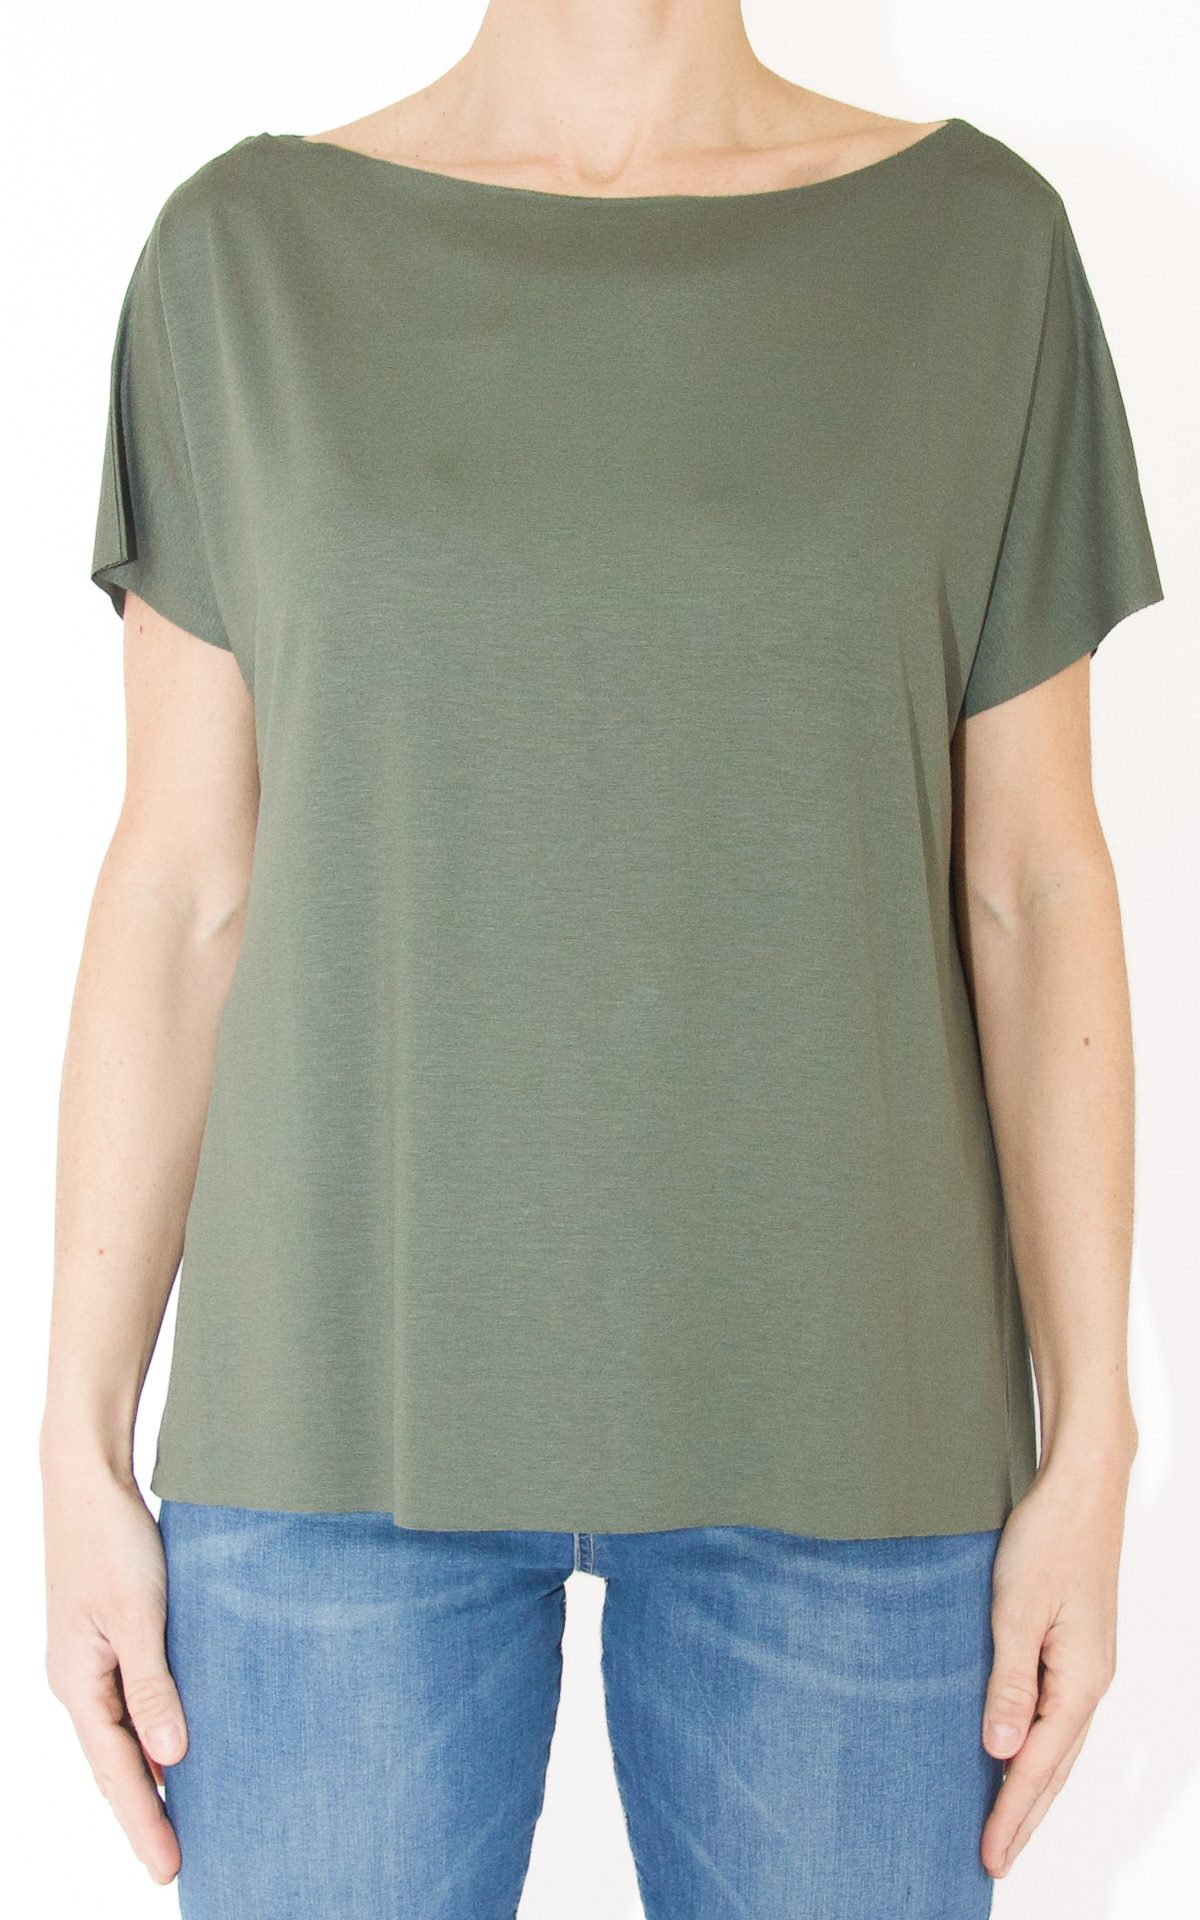 (image for) SusyMix – t-shirt scollo barca – verde militare